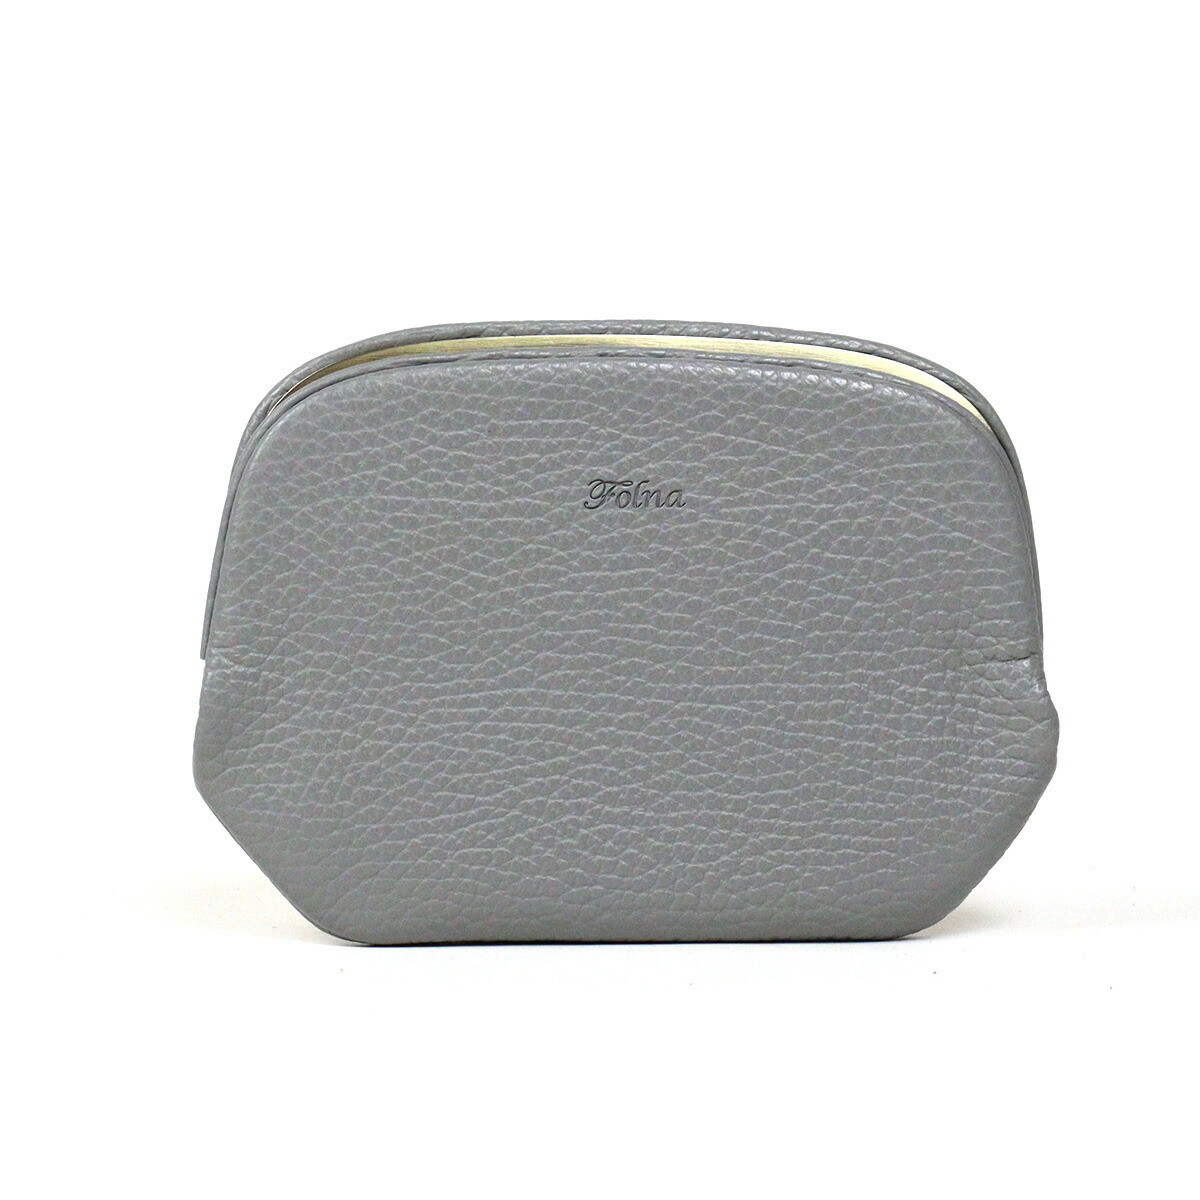 がま口 天溝 薄型 Folna フォルナ TENMIZO 2993865 本革 日本製 ミニ財布